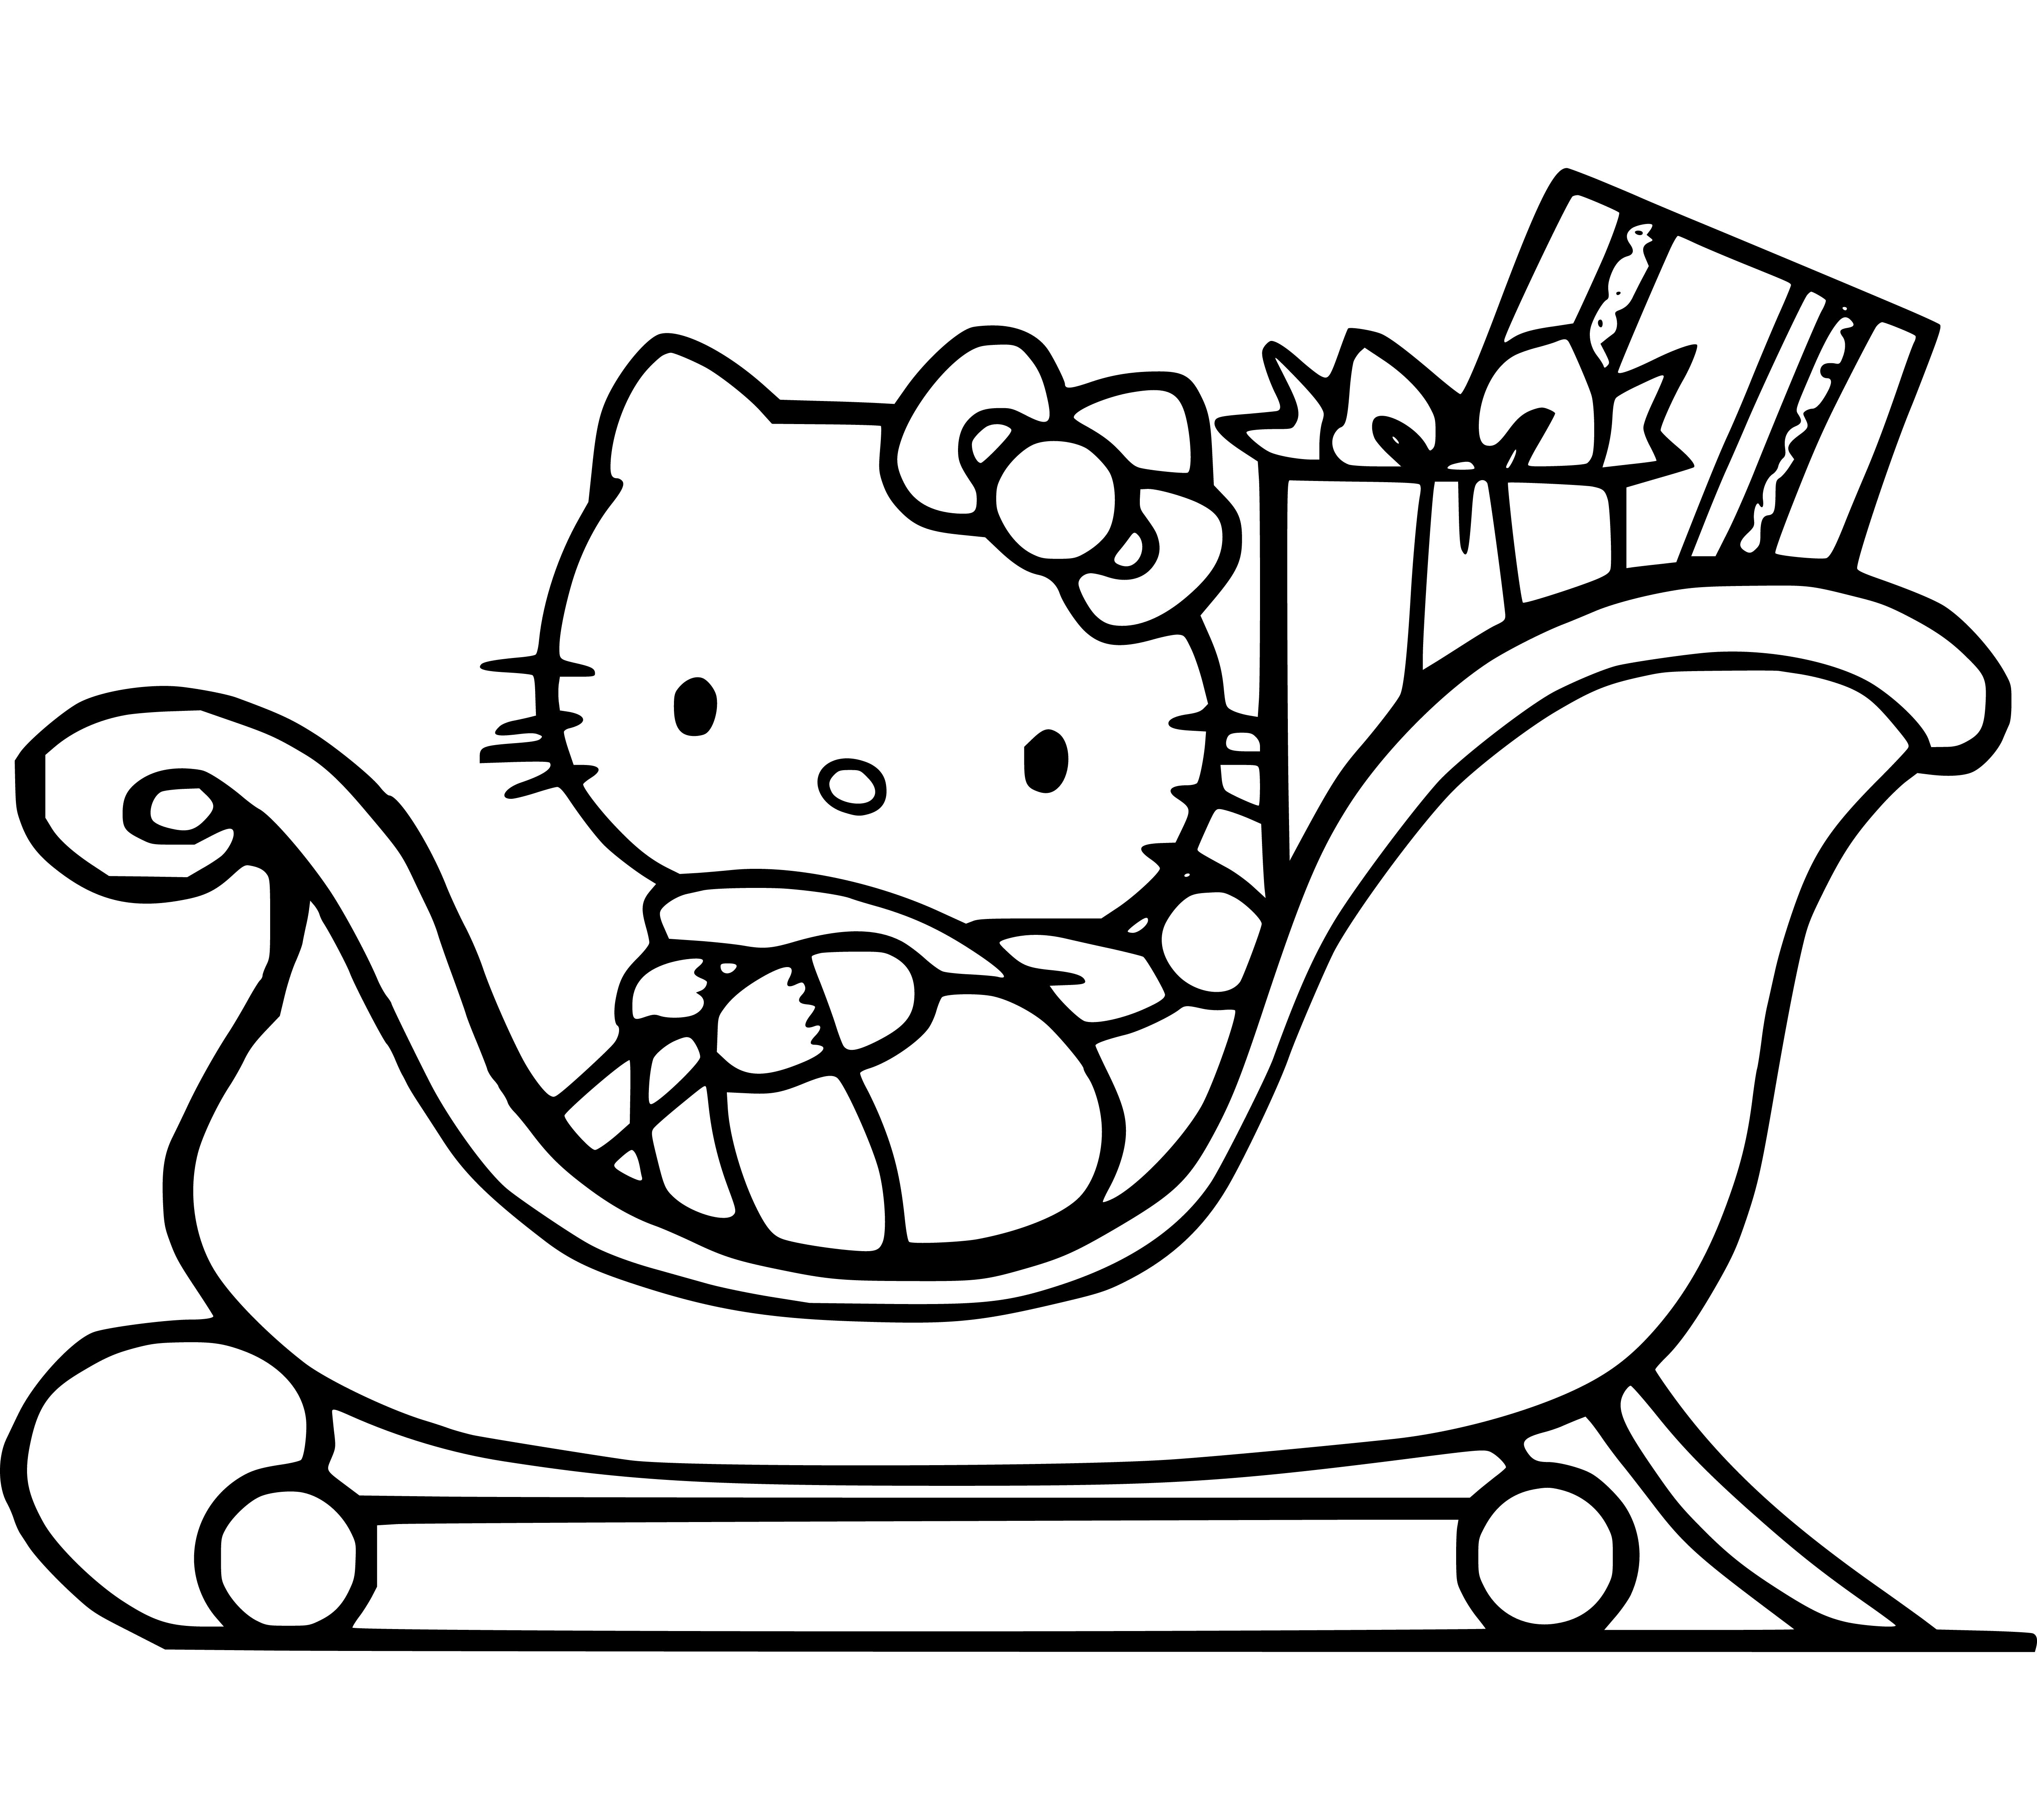 Hello Kitty Christmas Coloring Pages for Kids Printable - SheetalColor.com